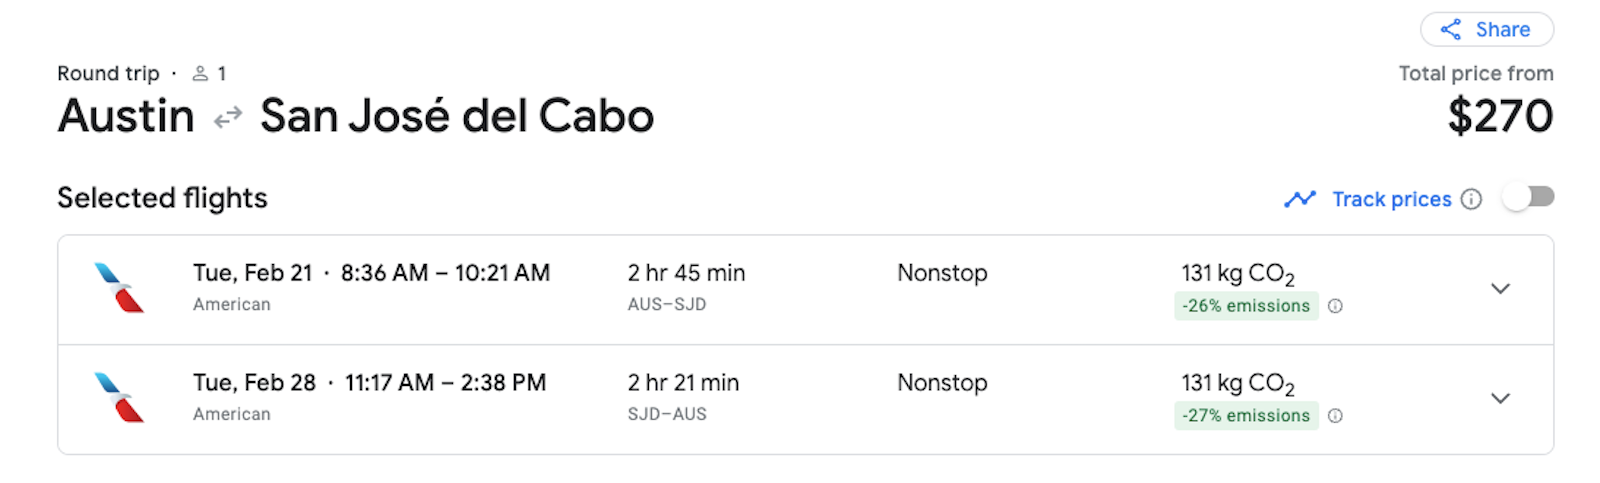 cabo flights